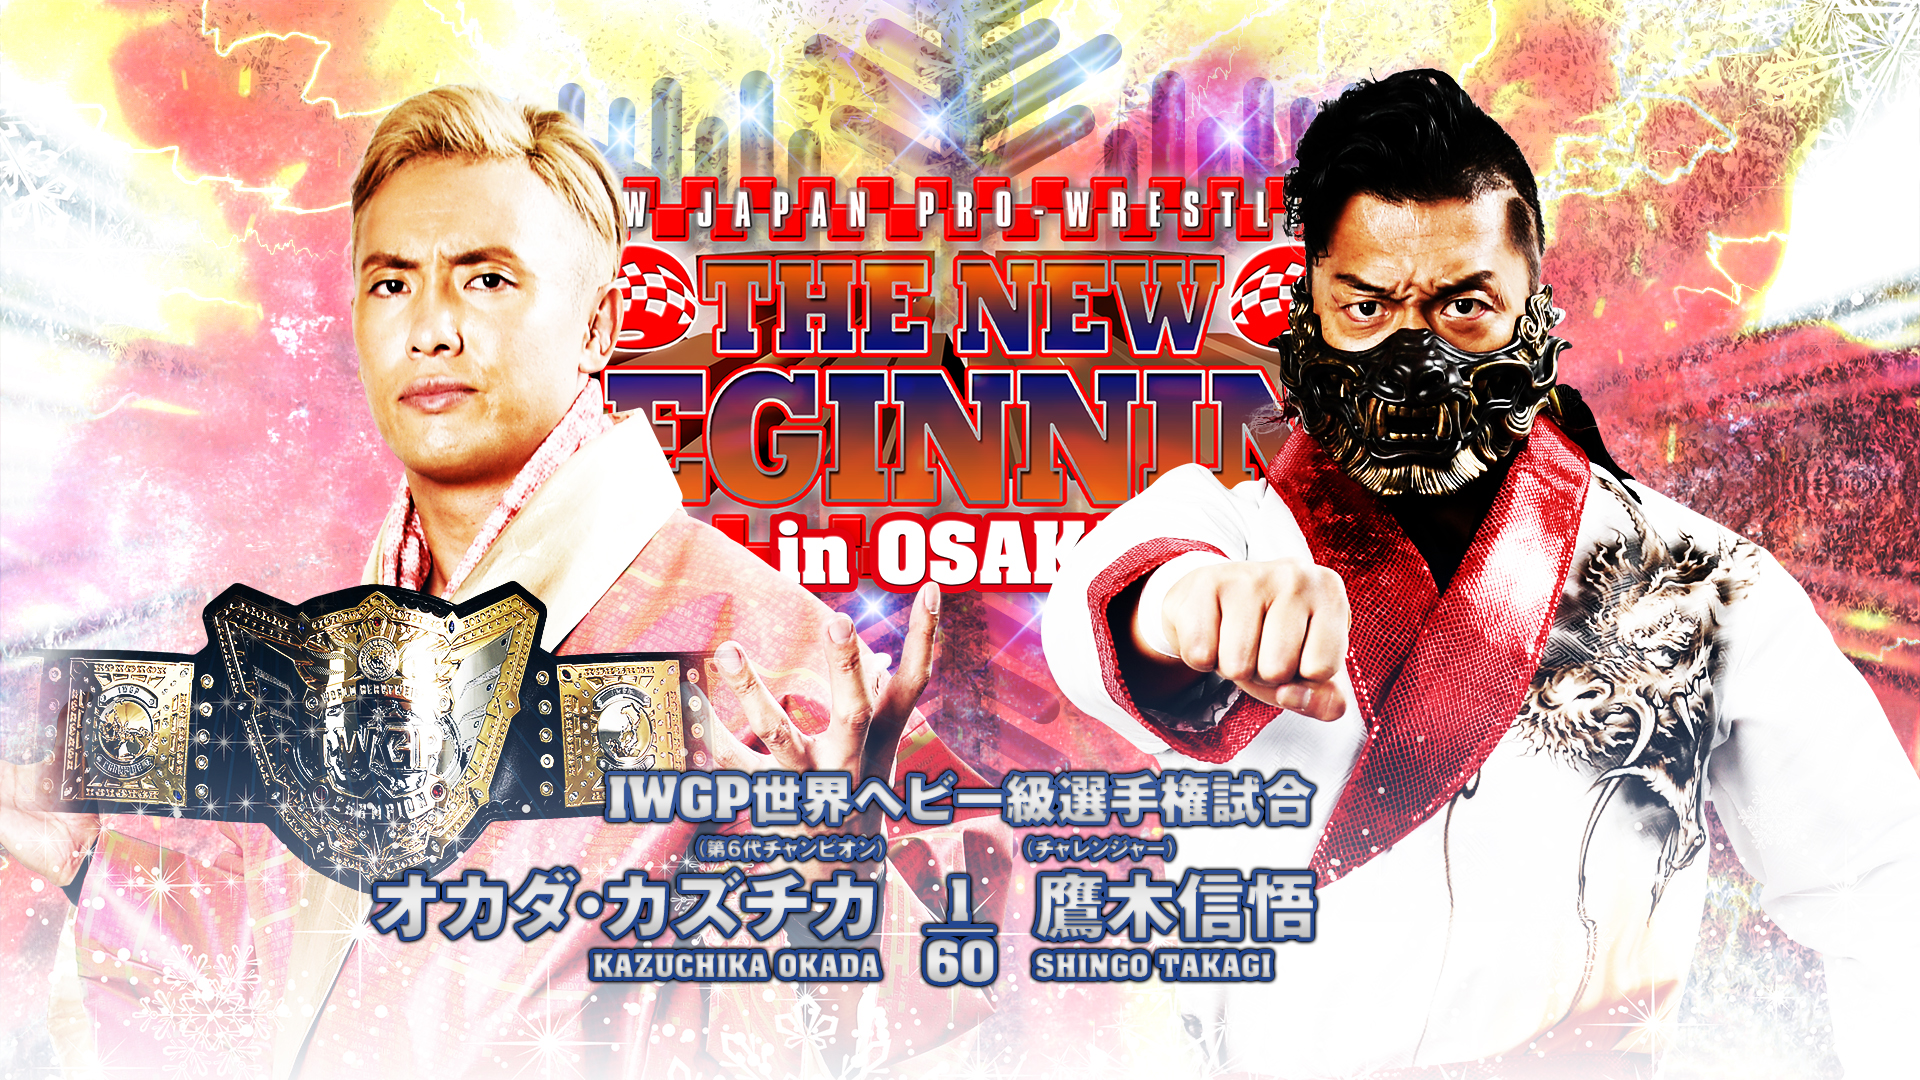 Shingo Takagi vs Kazuchika Okada: Wrestling Events